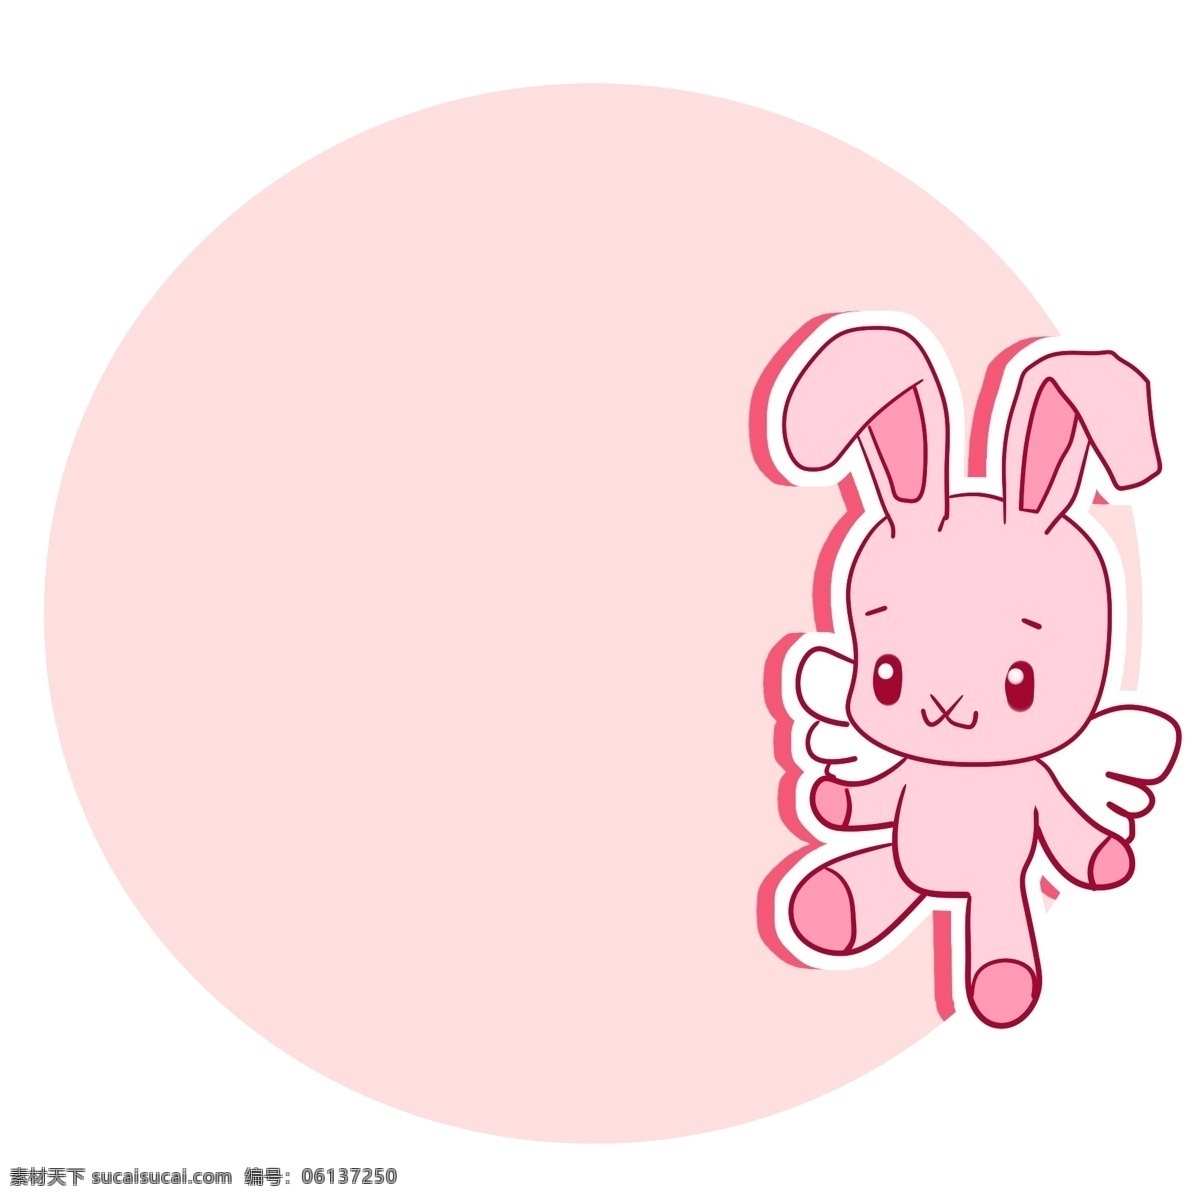 粉色 小 兔子 边框 装饰 粉色边框 粉色小兔子 可爱的边框 小动物边框 卡通边框 圆形边框 边框装饰插画